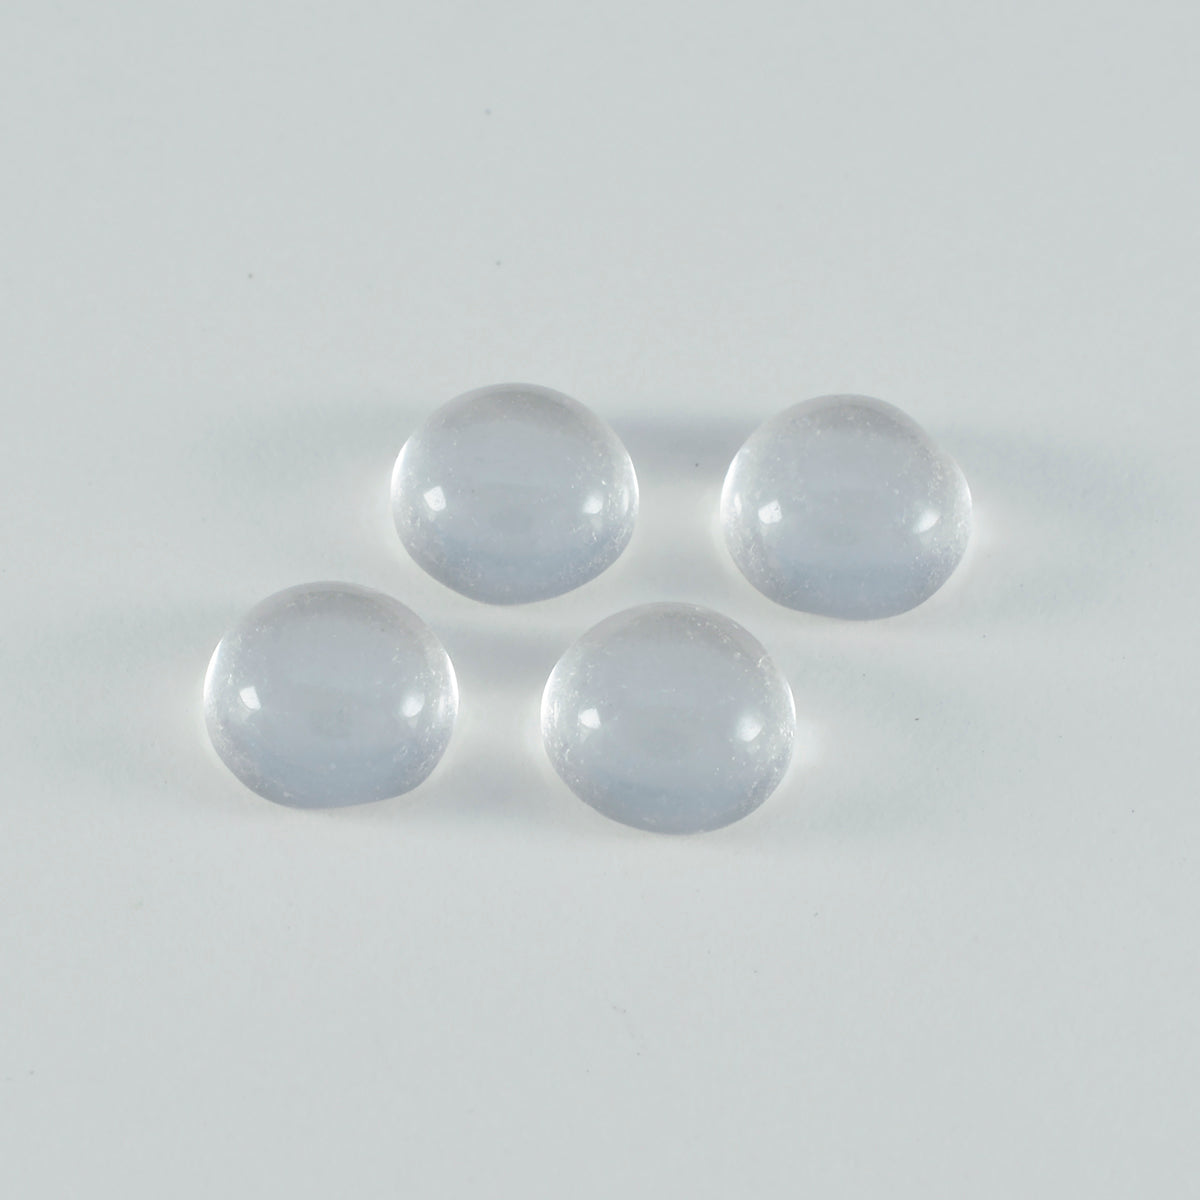 riyogems 1 шт. кабошон из белого кристалла кварца 6x6 мм круглой формы + качество, свободный драгоценный камень